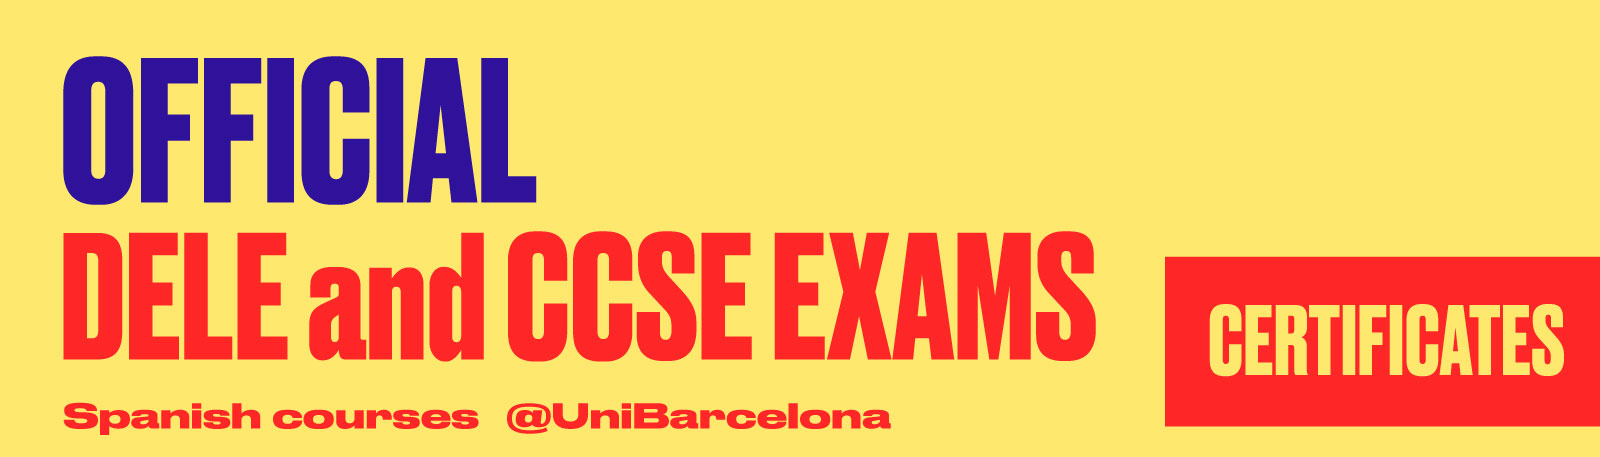 DELE and CCSE Examens